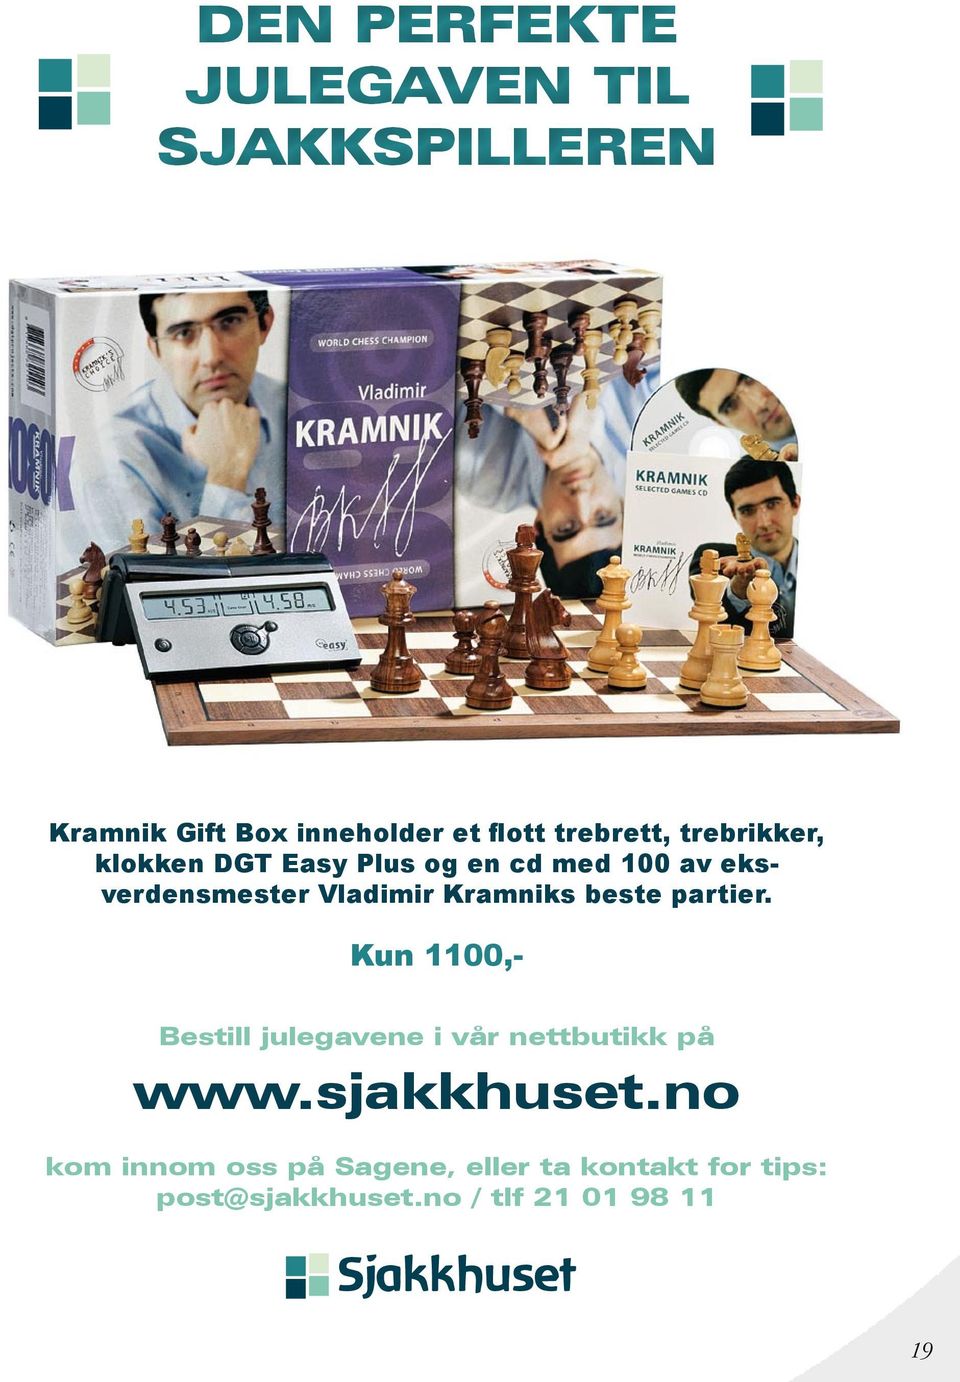 Kramniks beste partier. Kun 1100,- Bestill julegavene i vår nettbutikk på www.sjakkhuset.